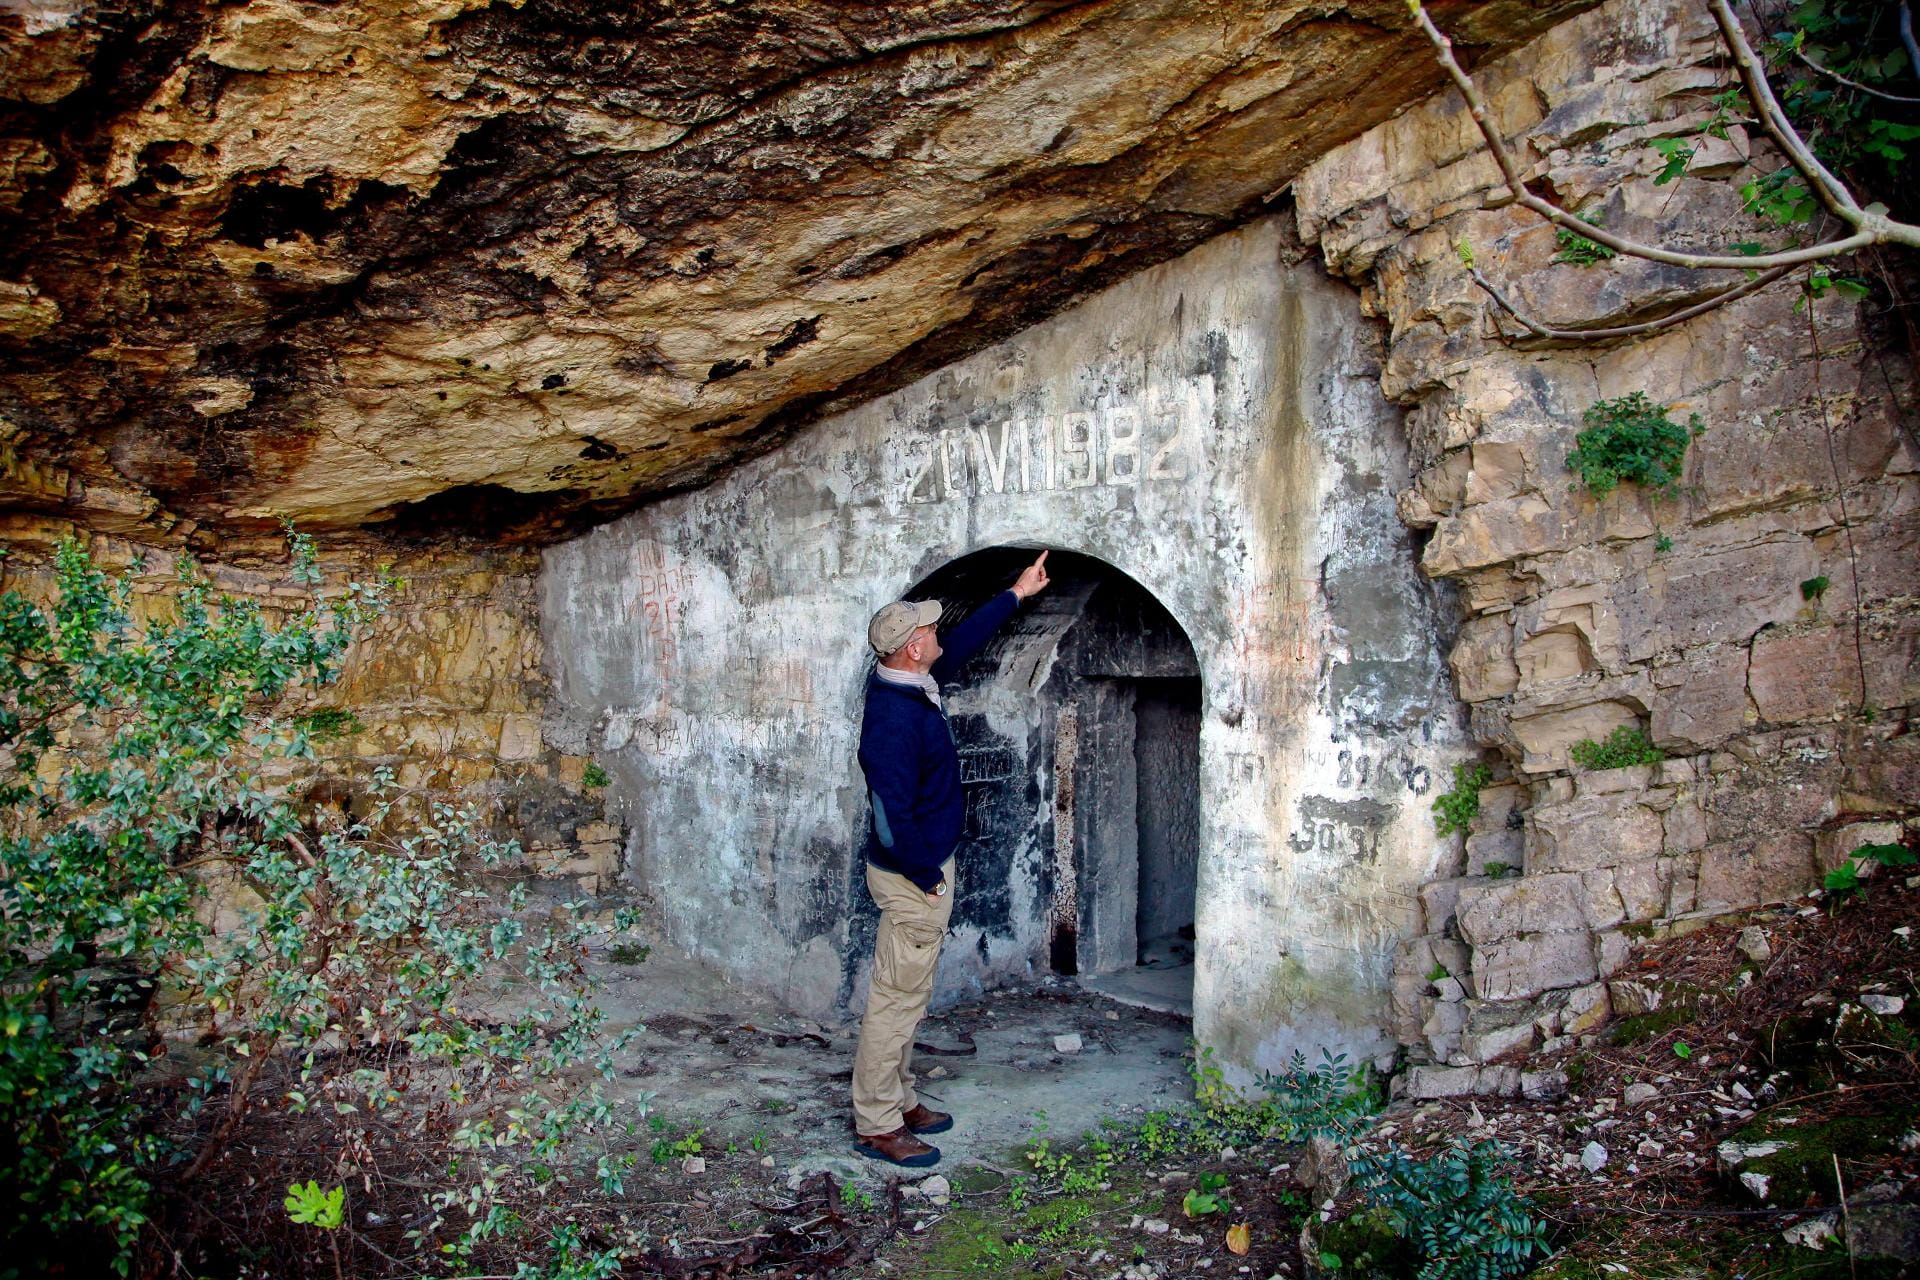 Ein Mitarbeiter der albanischen Küstenbehörde zeigt den Eingang zu einem Schutztunnel. Auch für die Röhren, die sich durch die Insel ziehen, gibt es neue Nutzungsideen - etwa als Weinkeller.